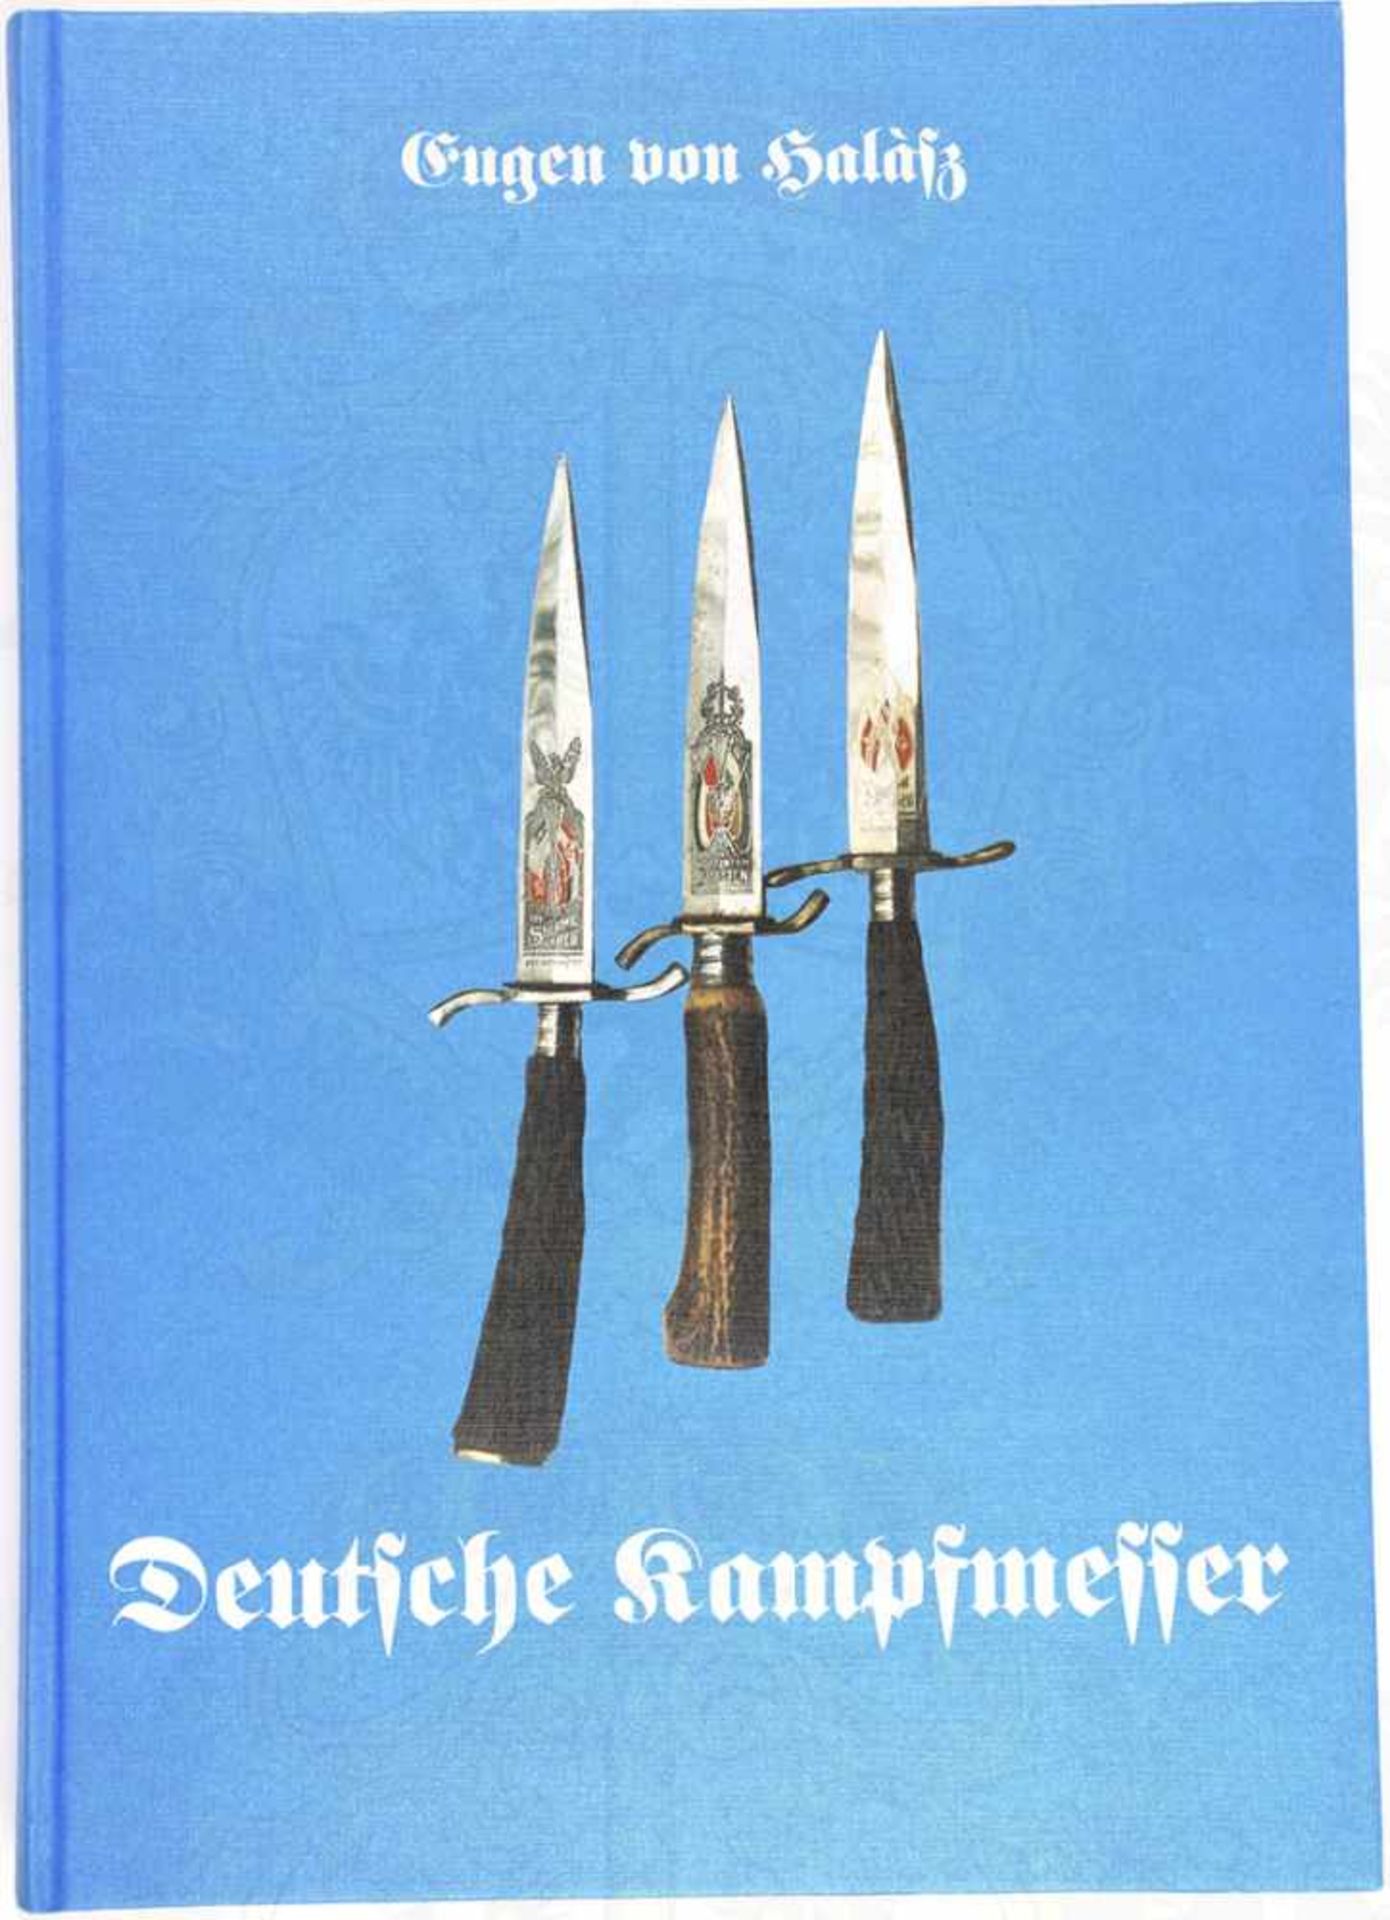 DEUTSCHE KAMPFMESSER, Eugen von Halasz de Darbas, Patzwall-V. 1996, zahlr. Fotos, 324 S., großf.